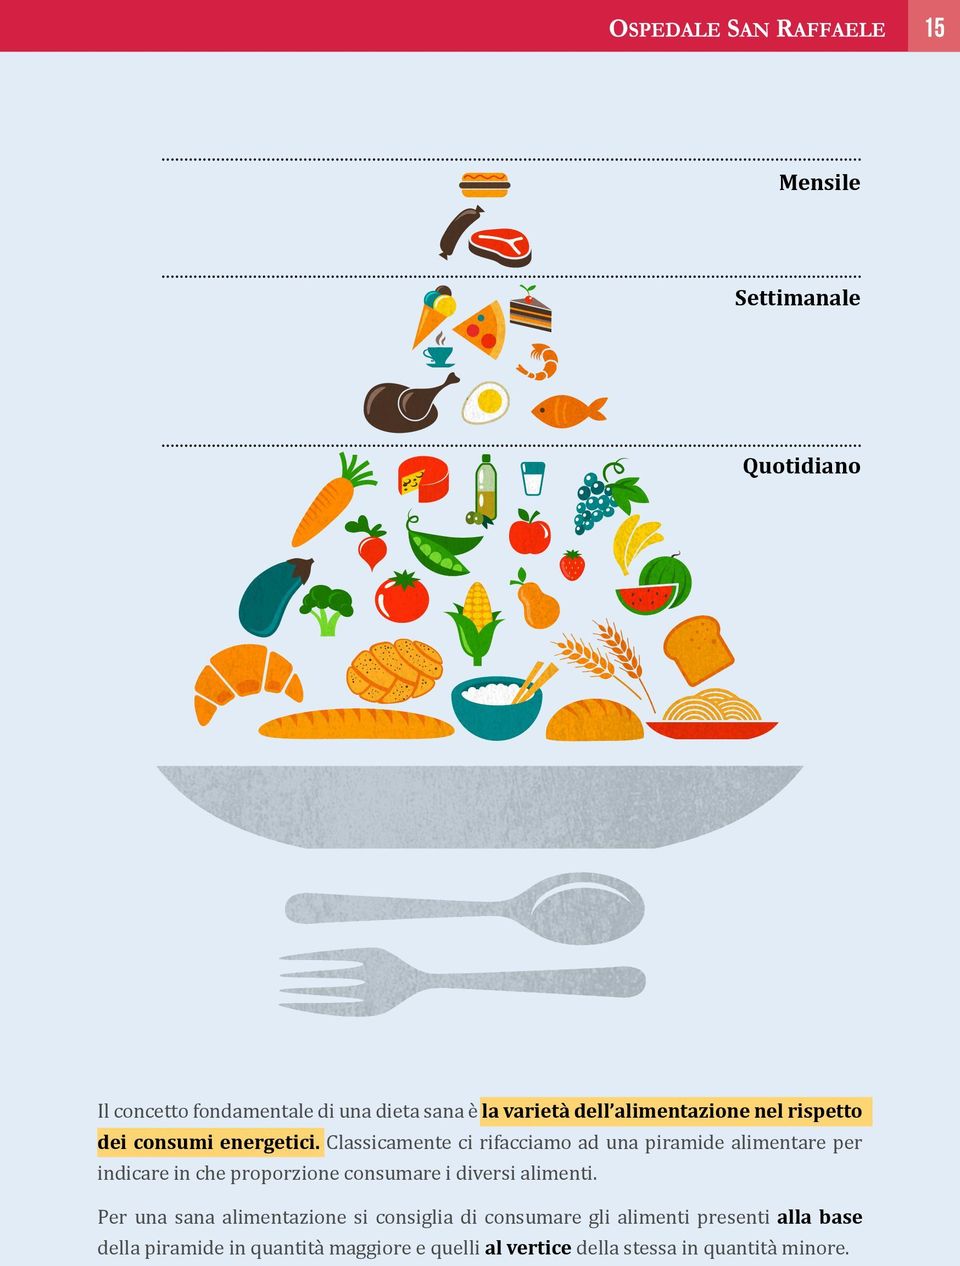 Classicamente ci rifacciamo ad una piramide alimentare per indicare in che proporzione consumare i diversi